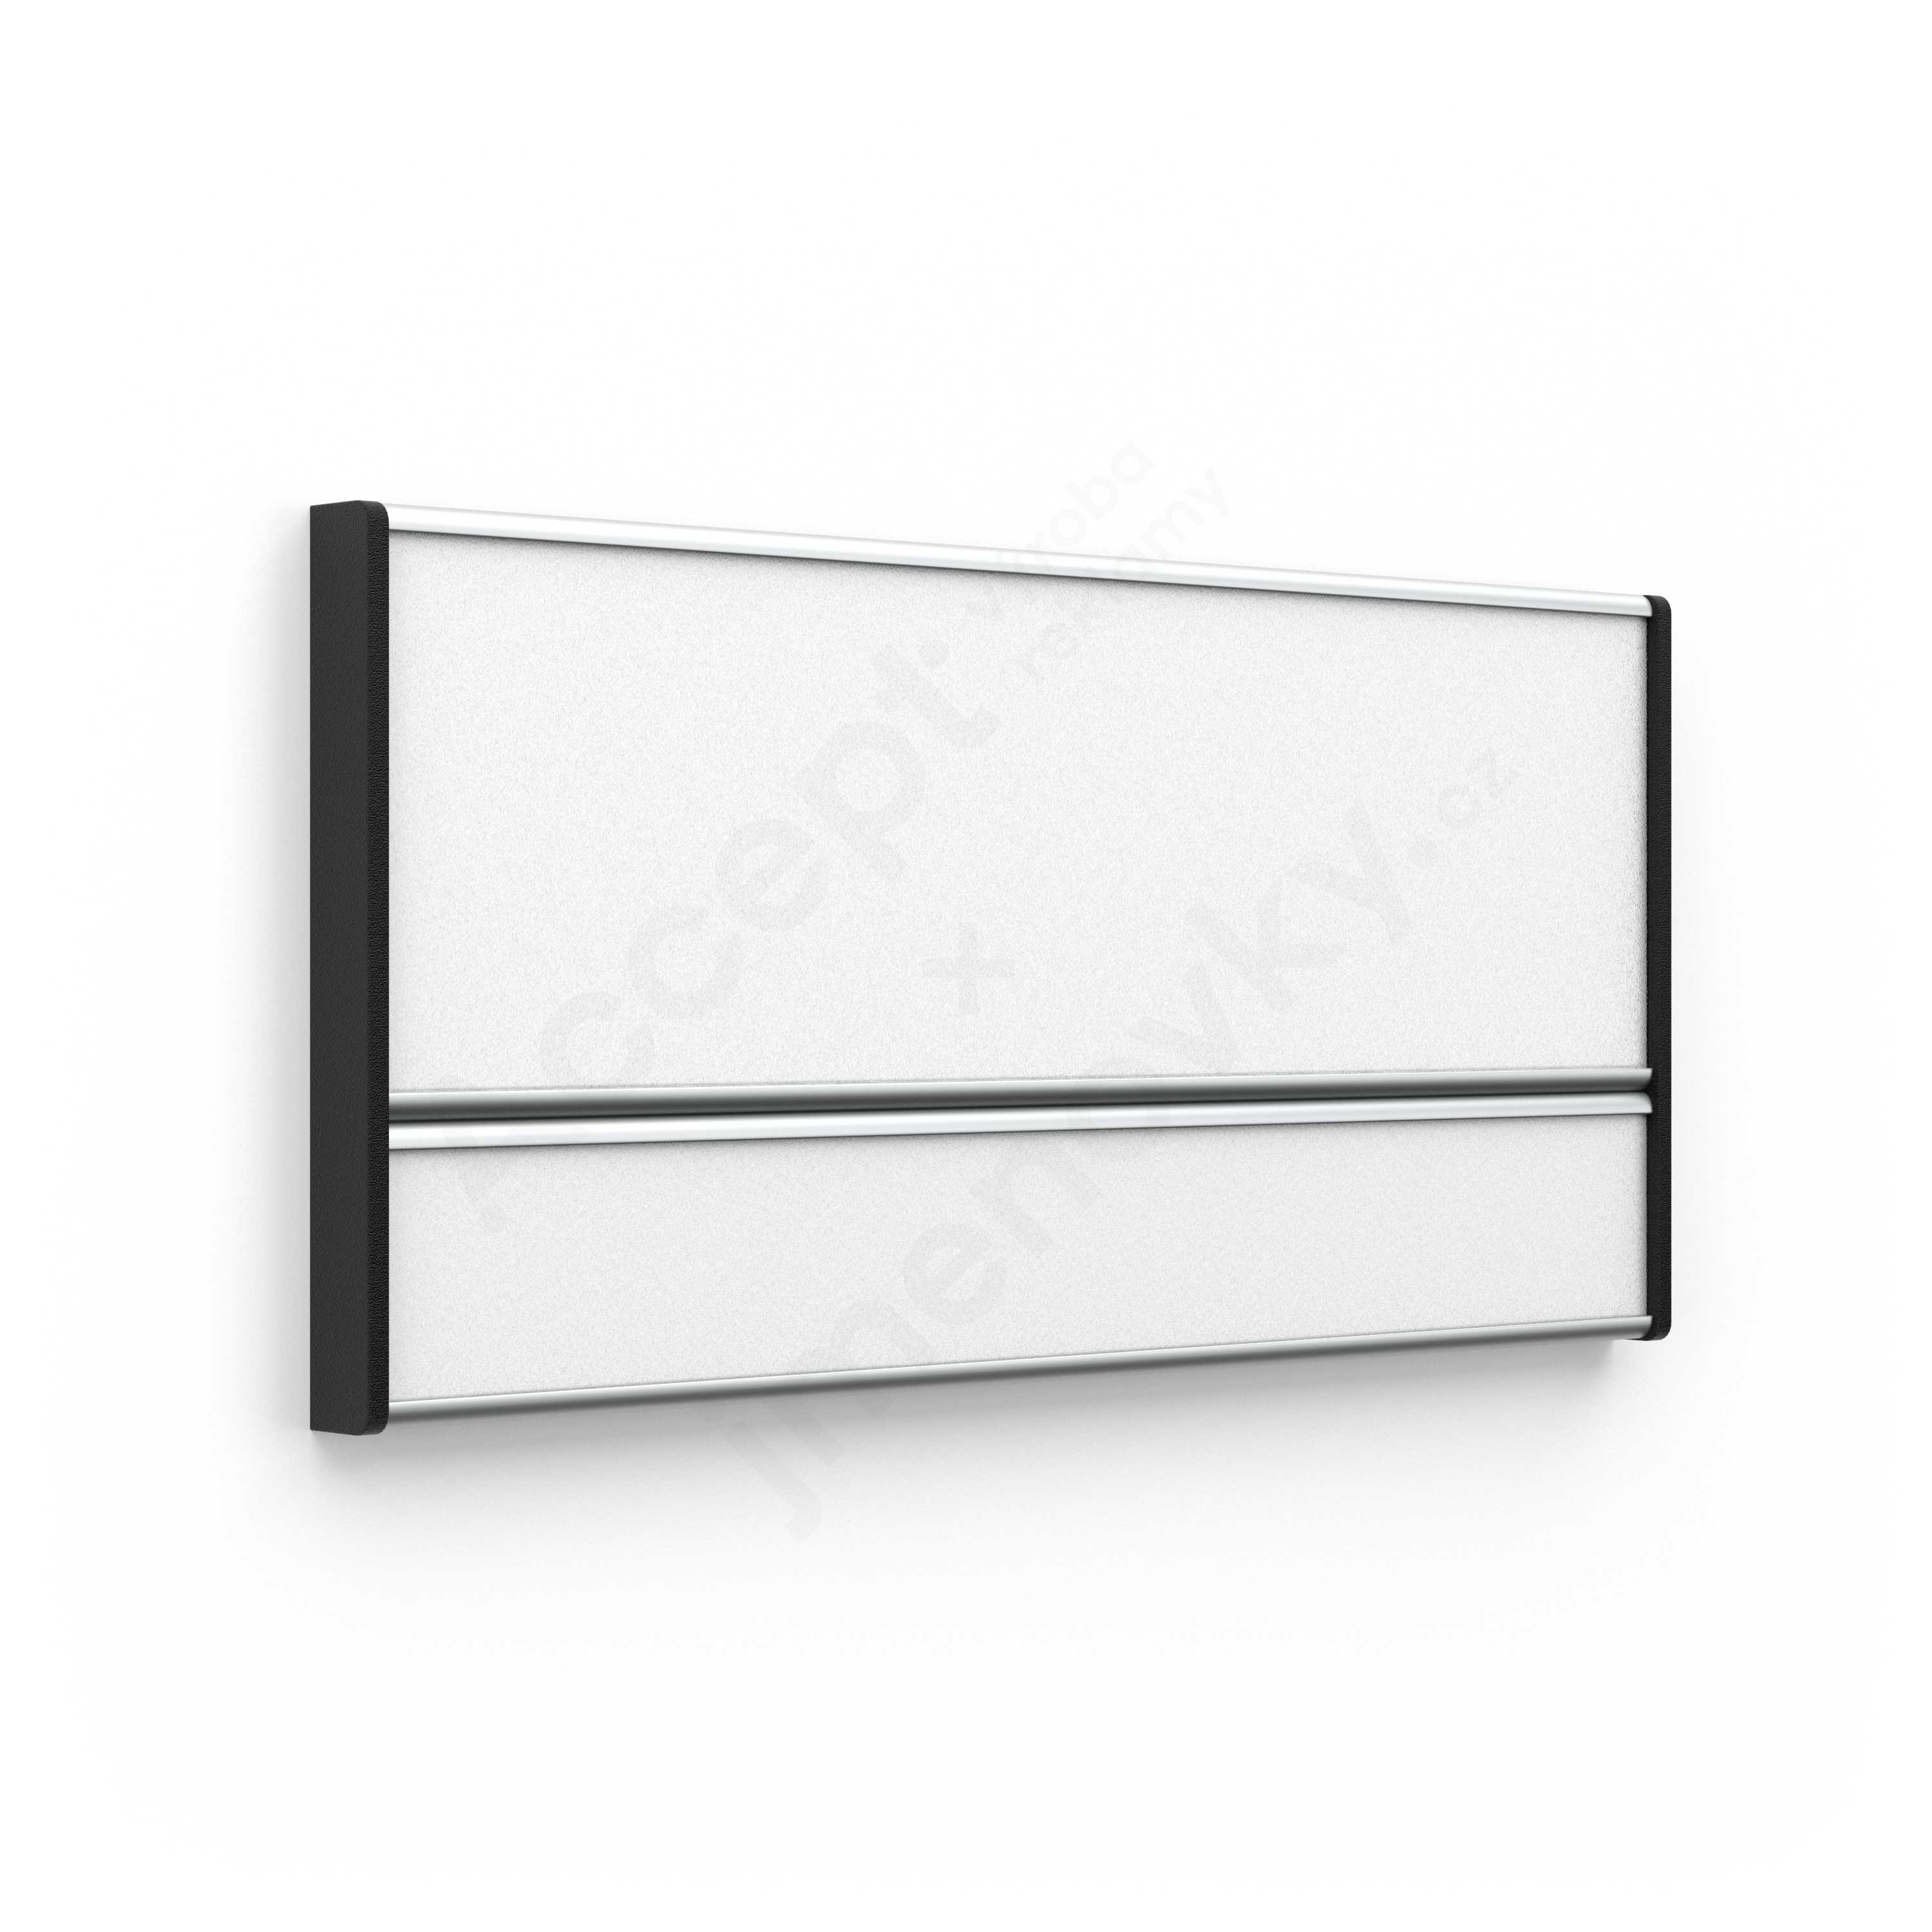 Dveřní tabulka ACS (zásuvný systém, 187 x 93 mm)